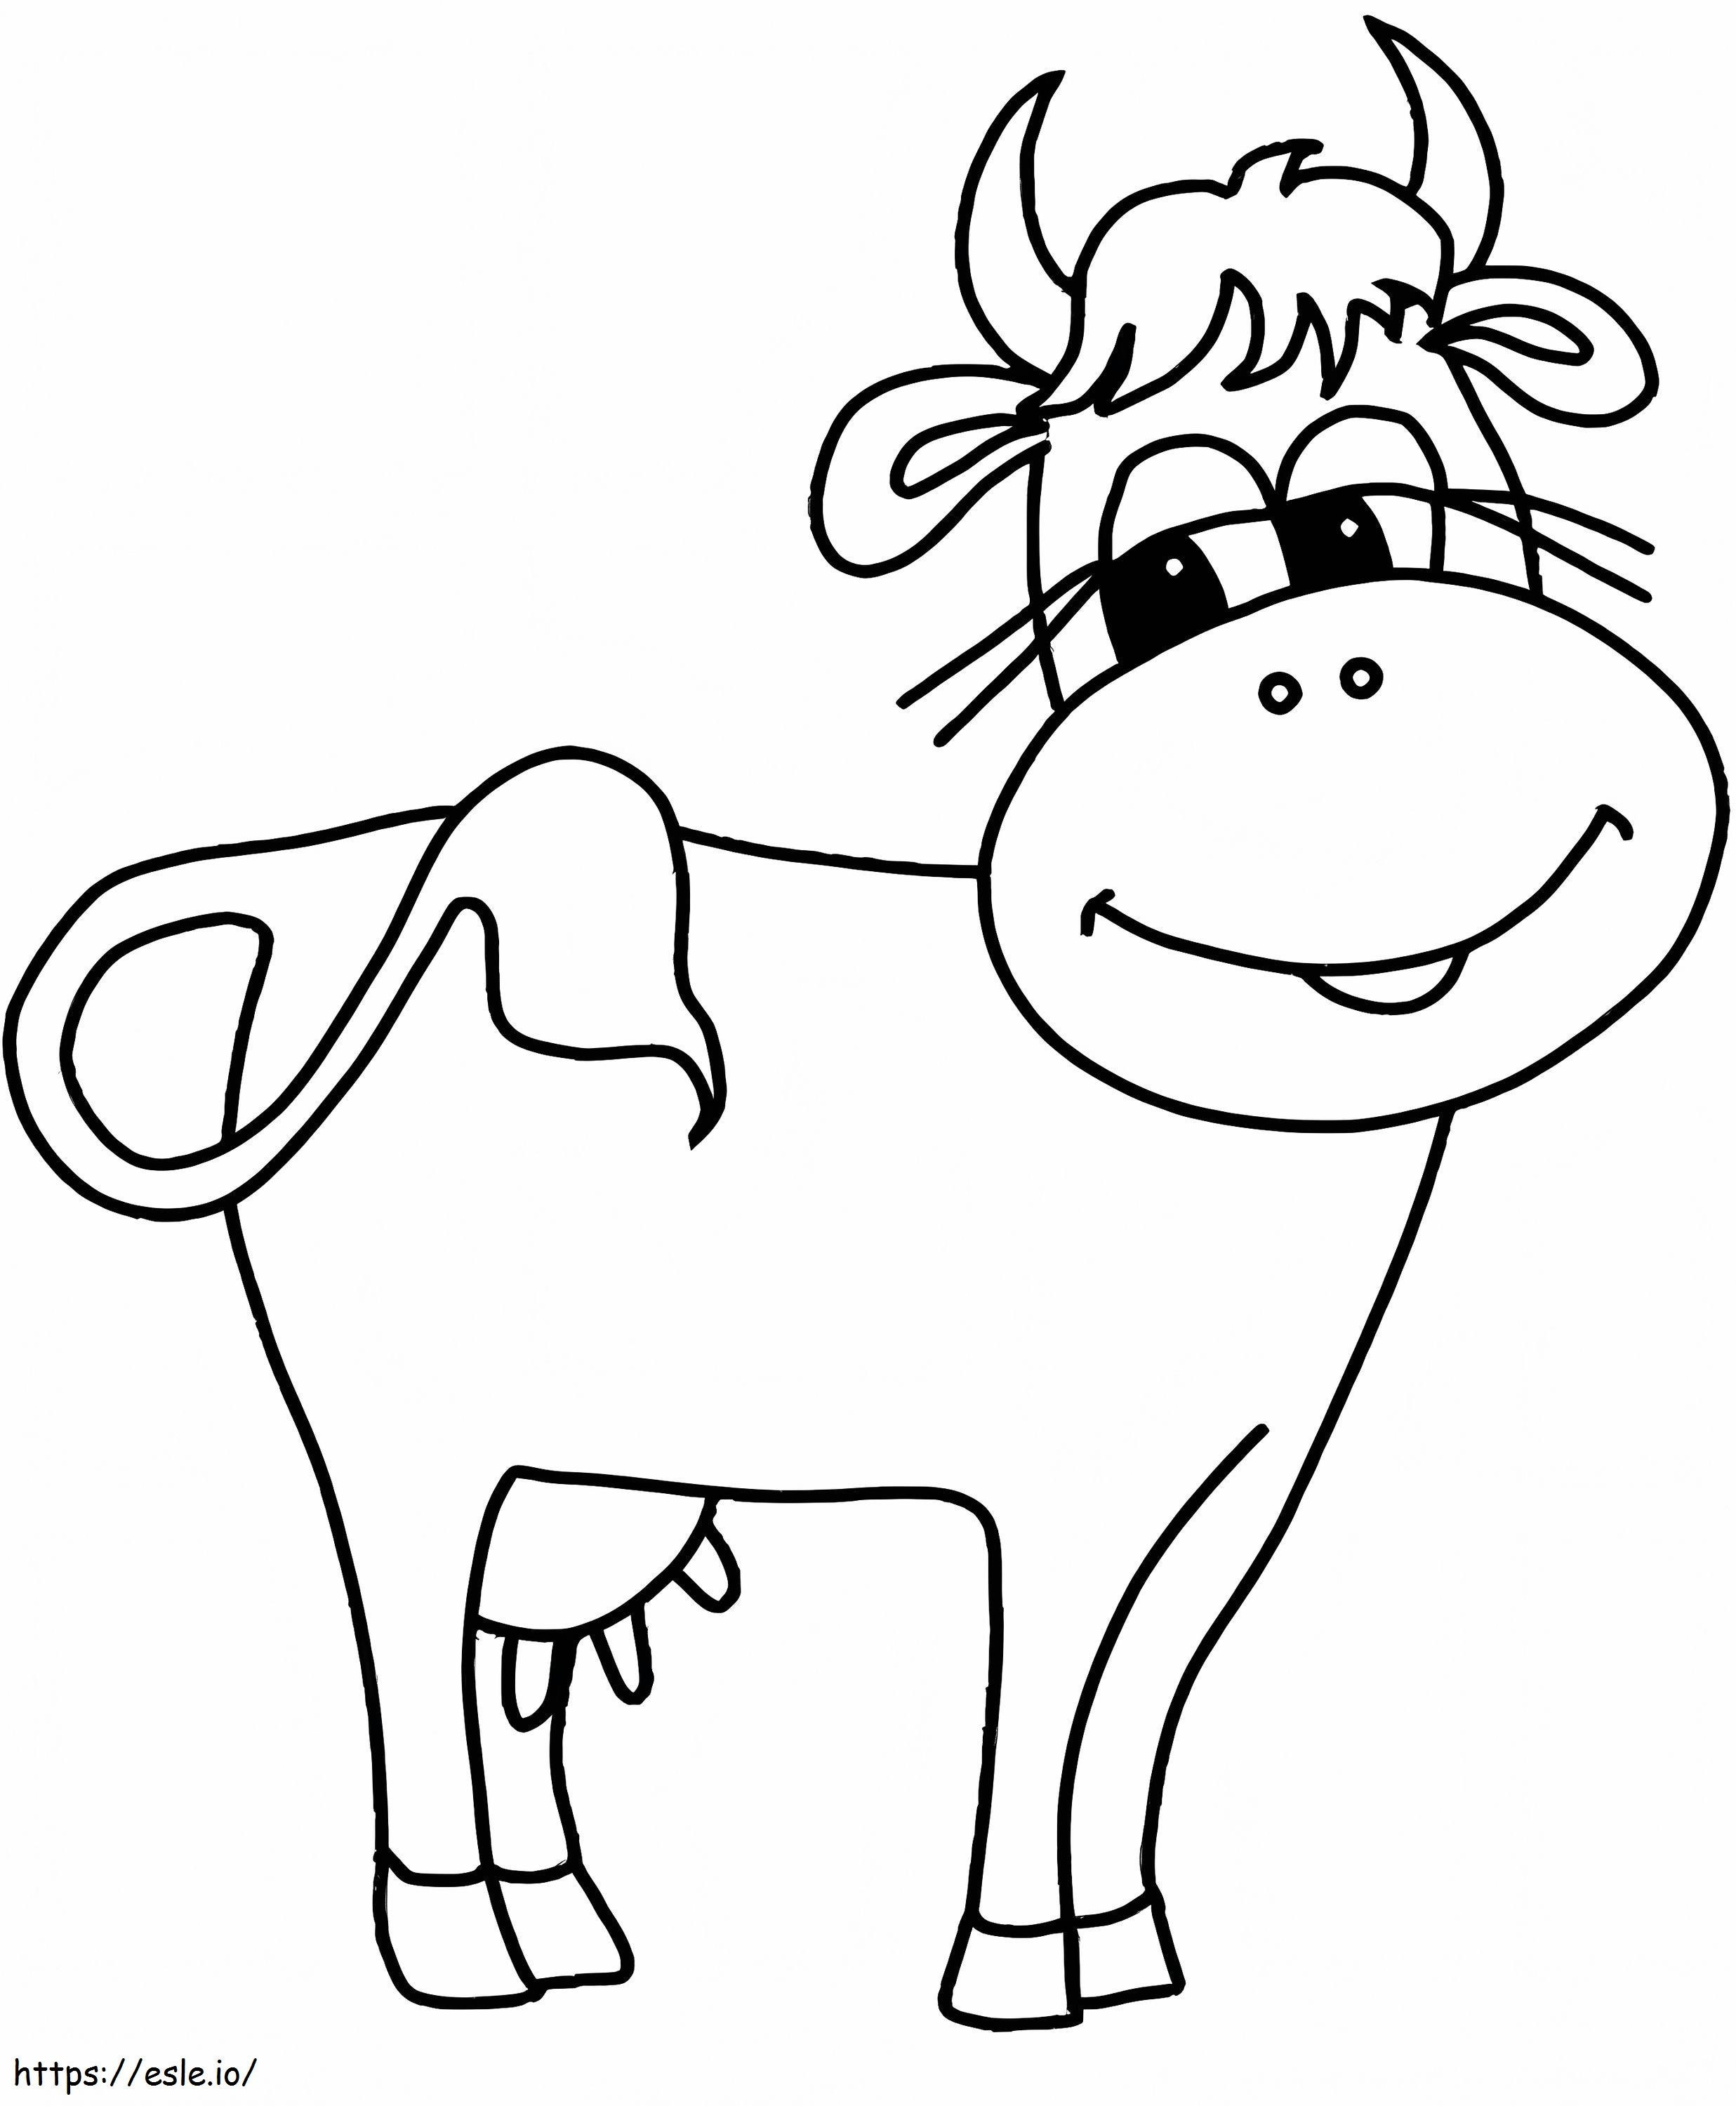 Coloriage La vache sourit à imprimer dessin